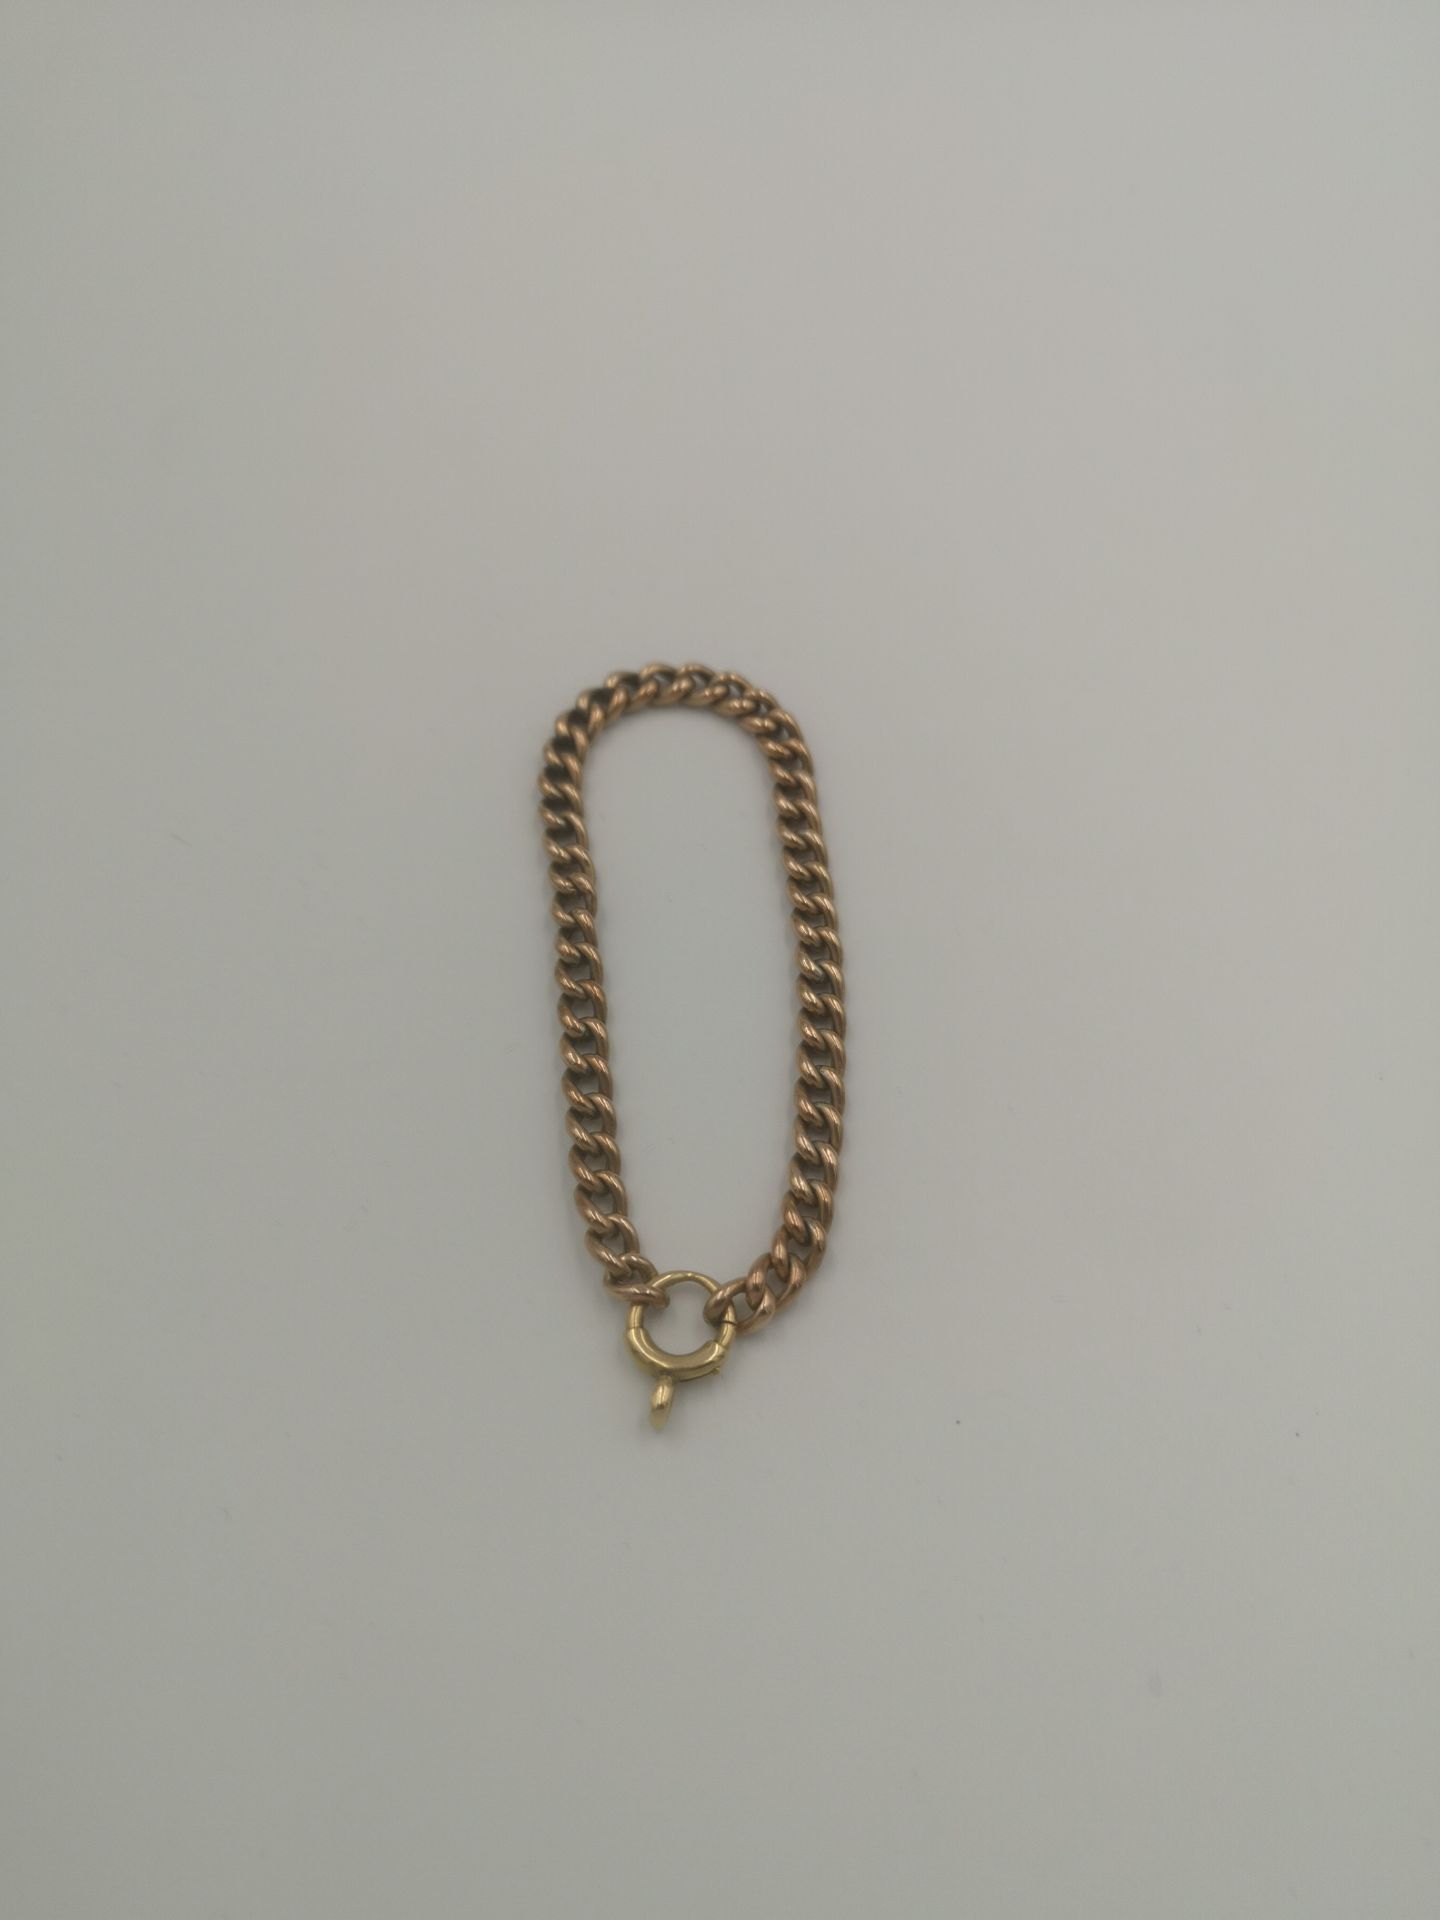 9ct gold curb link bracelet - Image 4 of 4